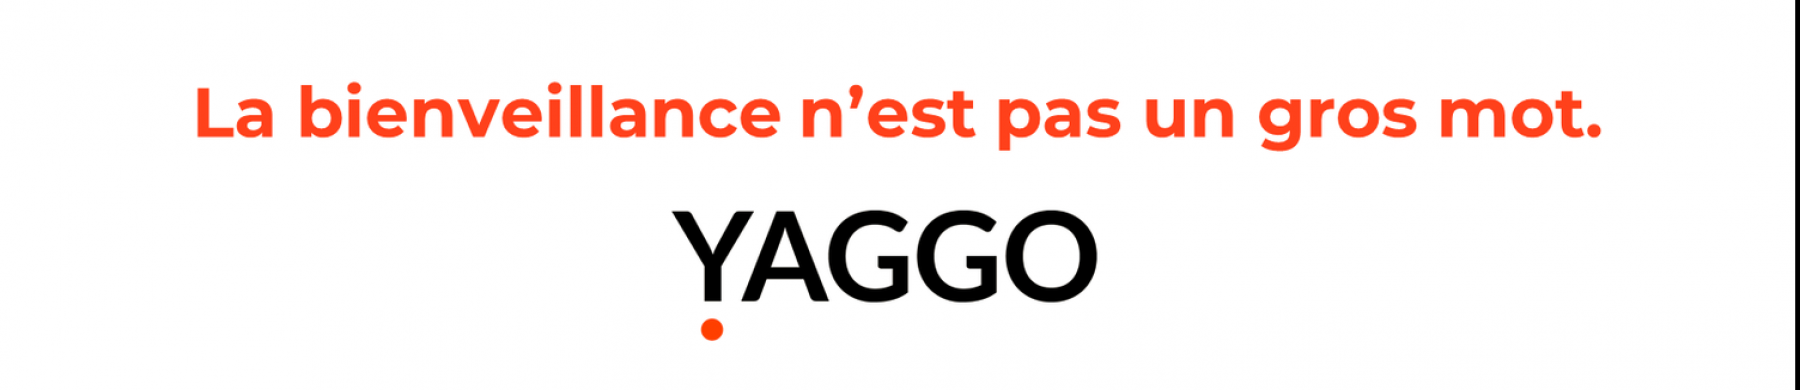 Bannière Yaggo